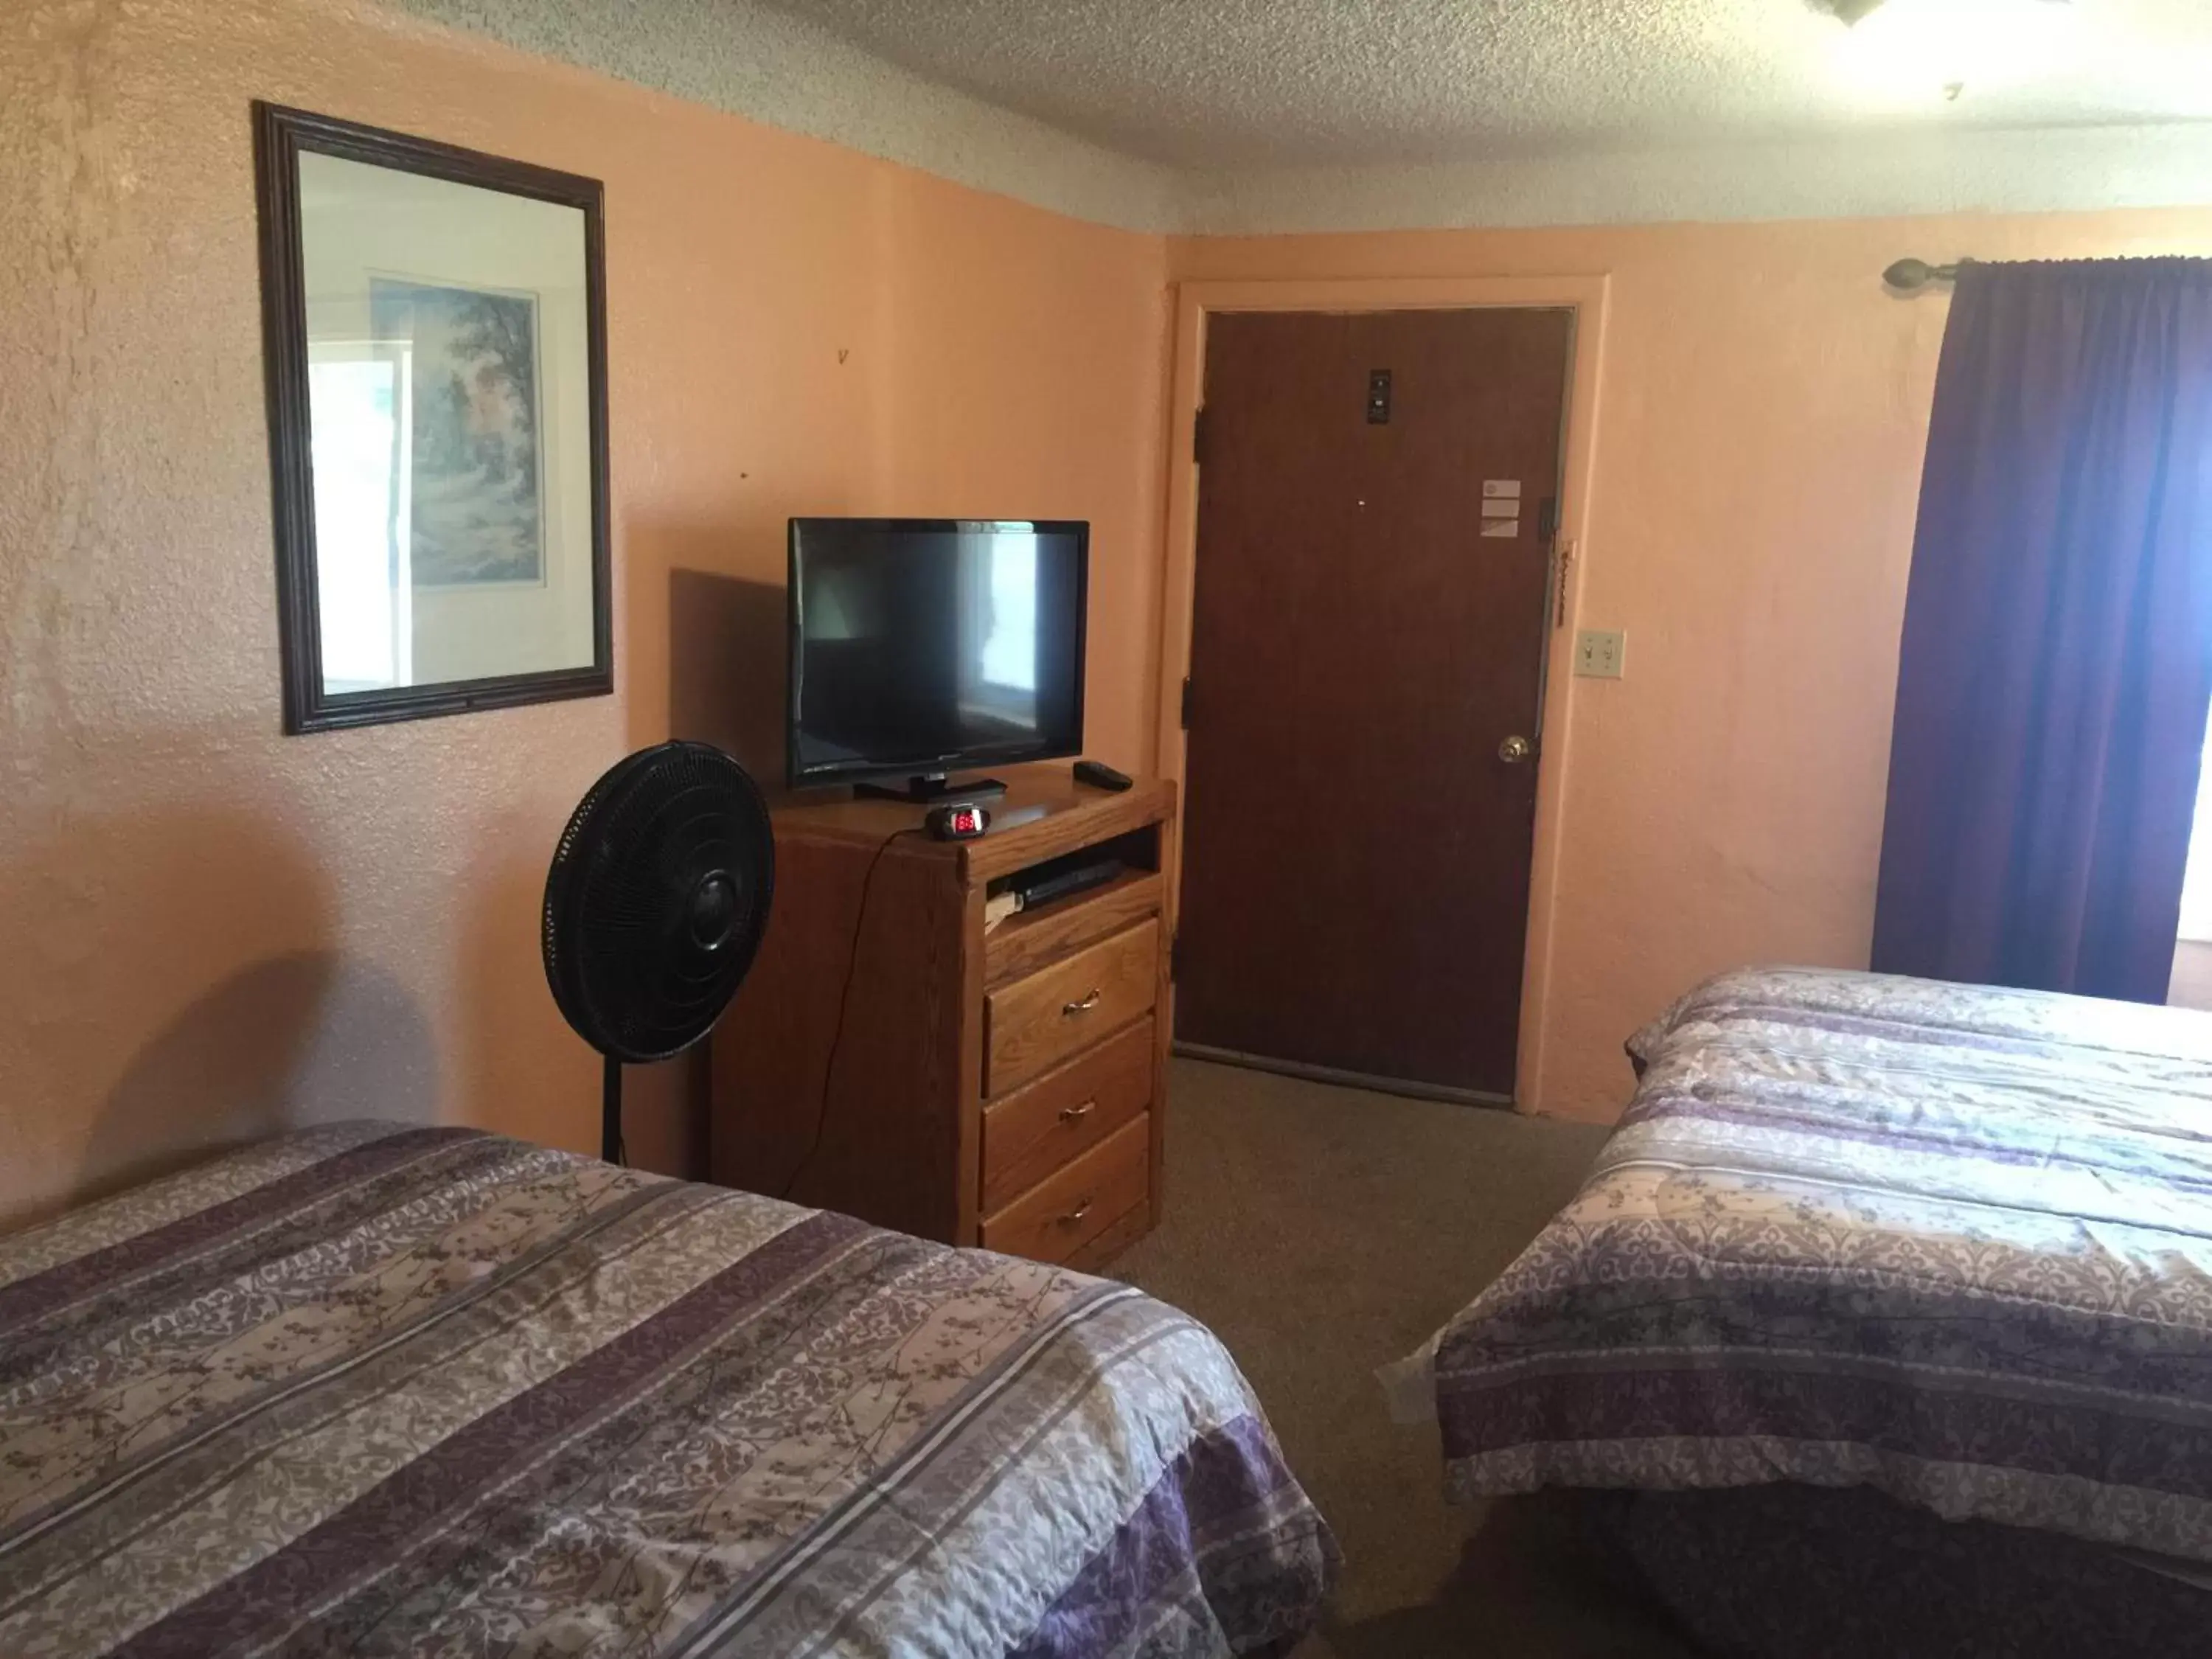 TV and multimedia, Room Photo in Budget Inn Motel Chemult